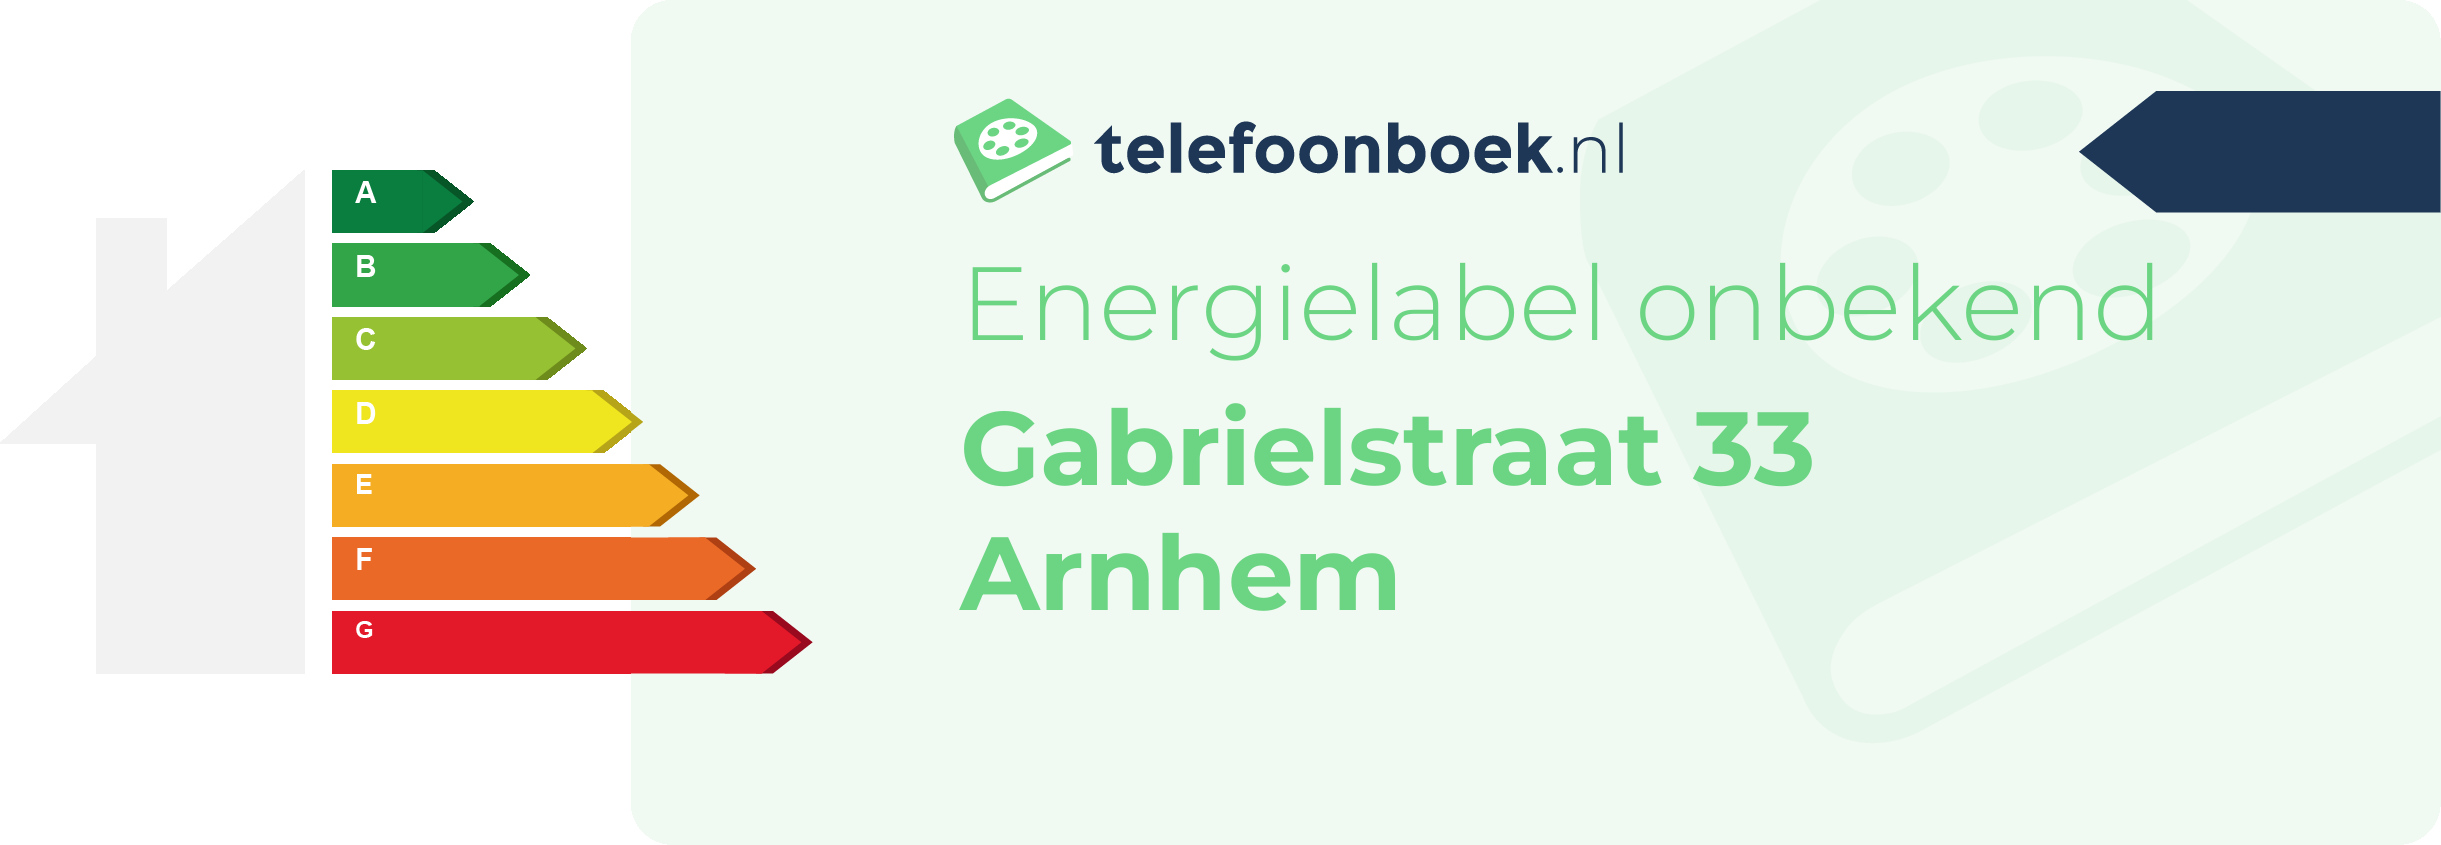 Energielabel Gabrielstraat 33 Arnhem